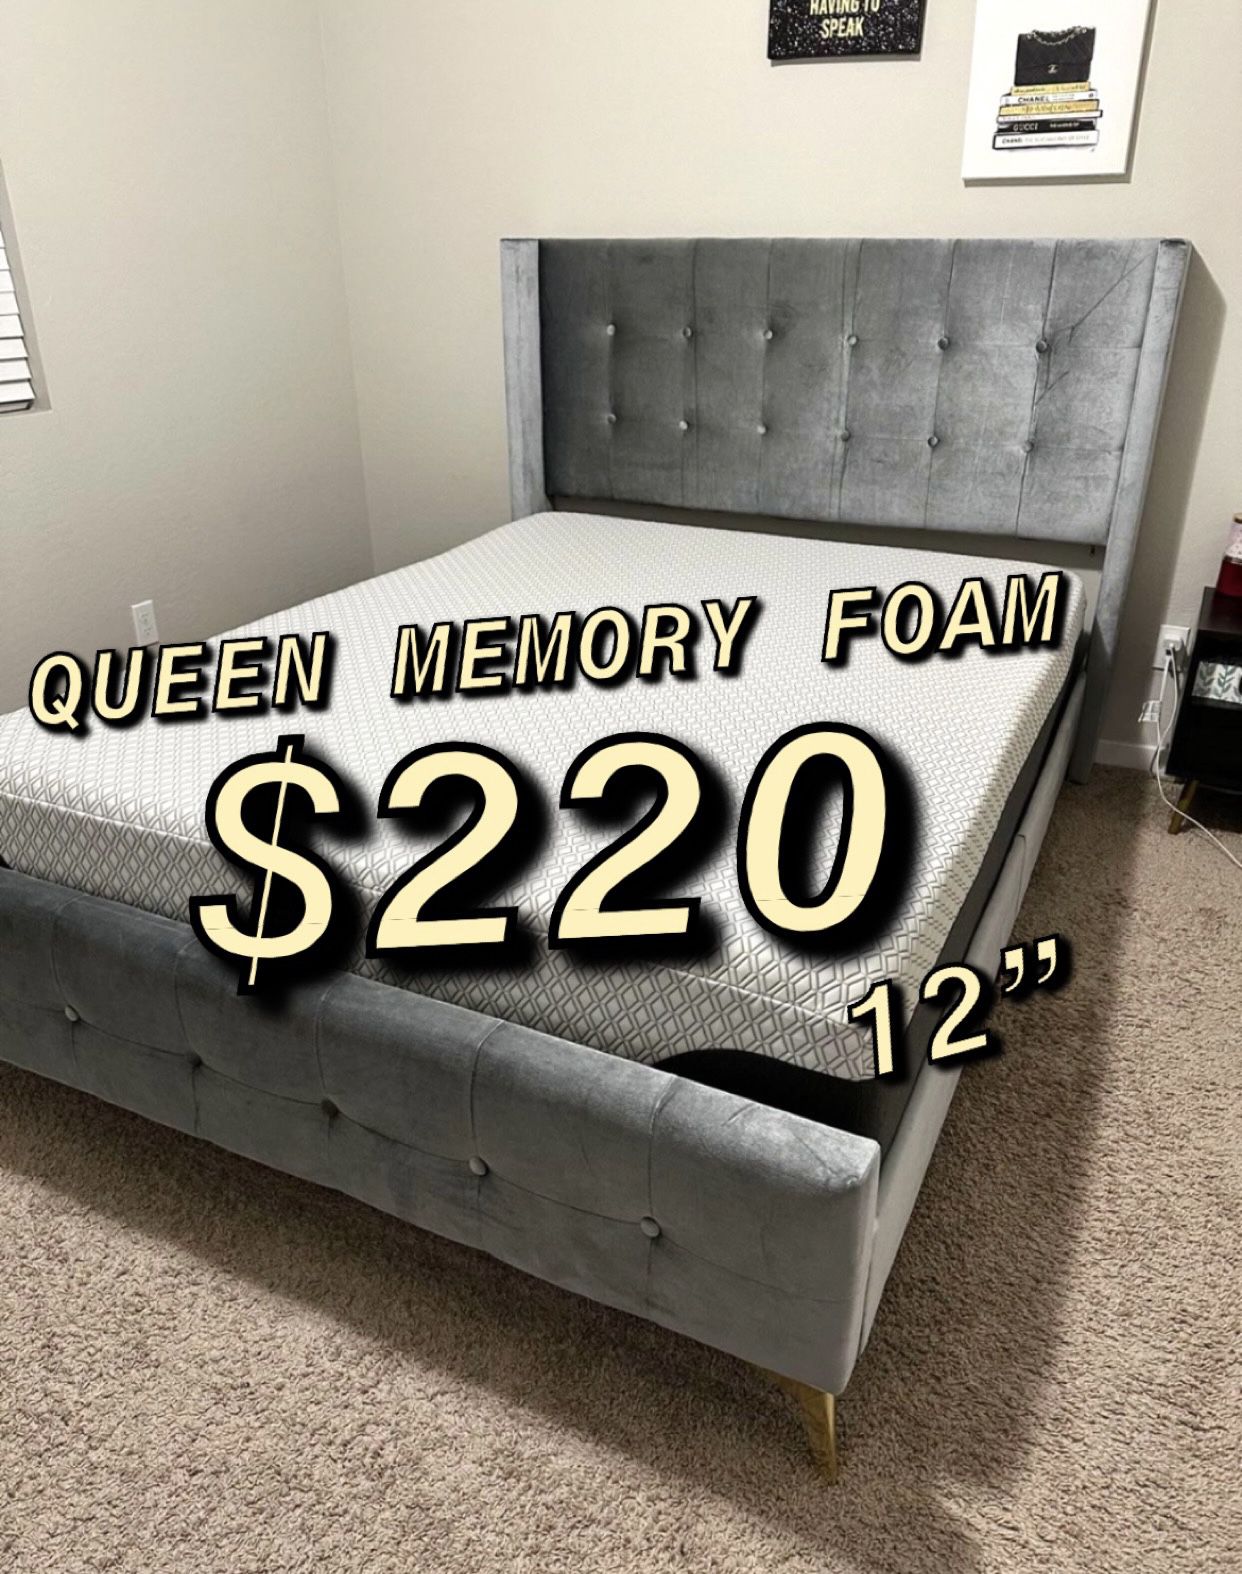 Queen Memory Foam Mattress $220